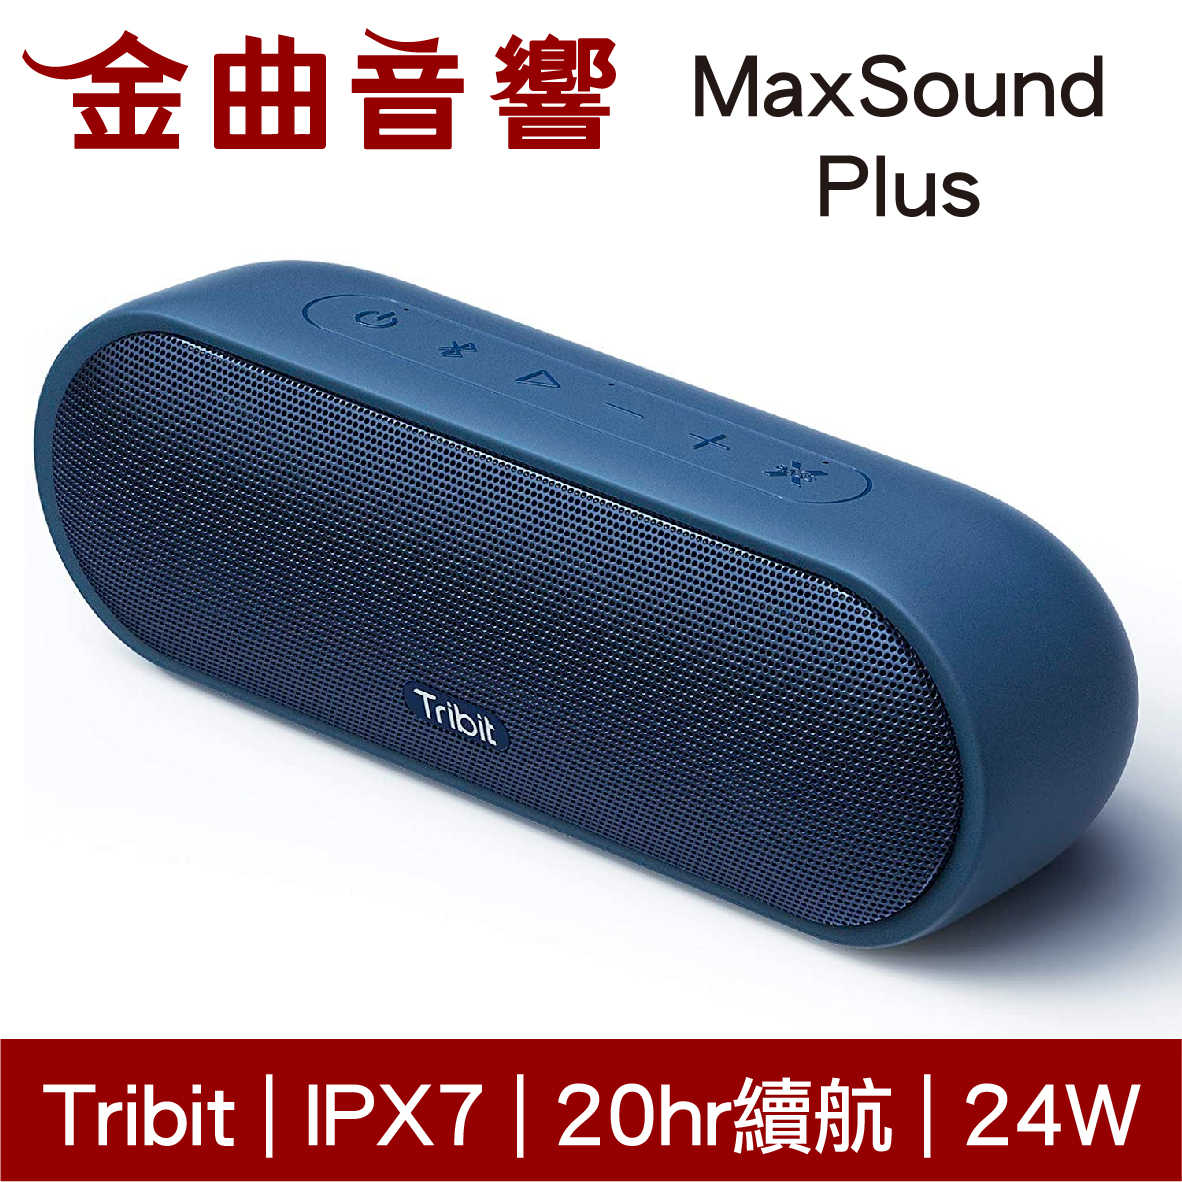 Tribit MaxSound Plus 藍色 內置麥克風 IPX7 立體聲 可攜式 藍牙 喇叭 | 金曲音響